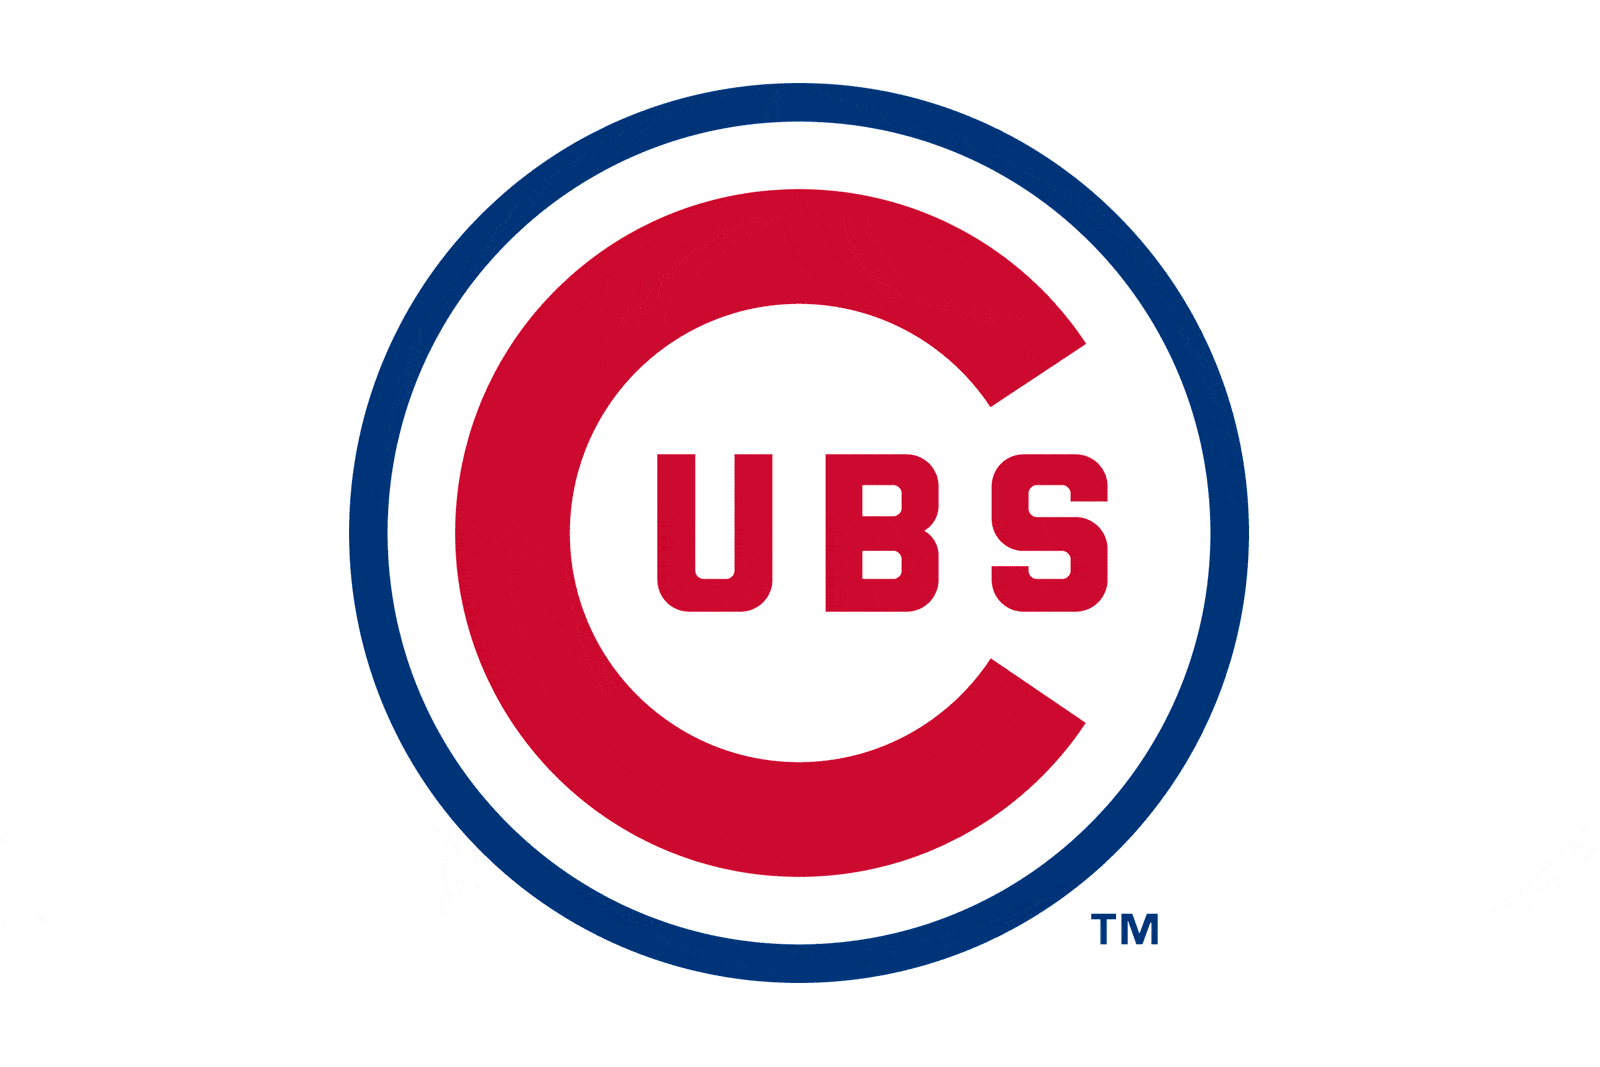 Cubs Logos